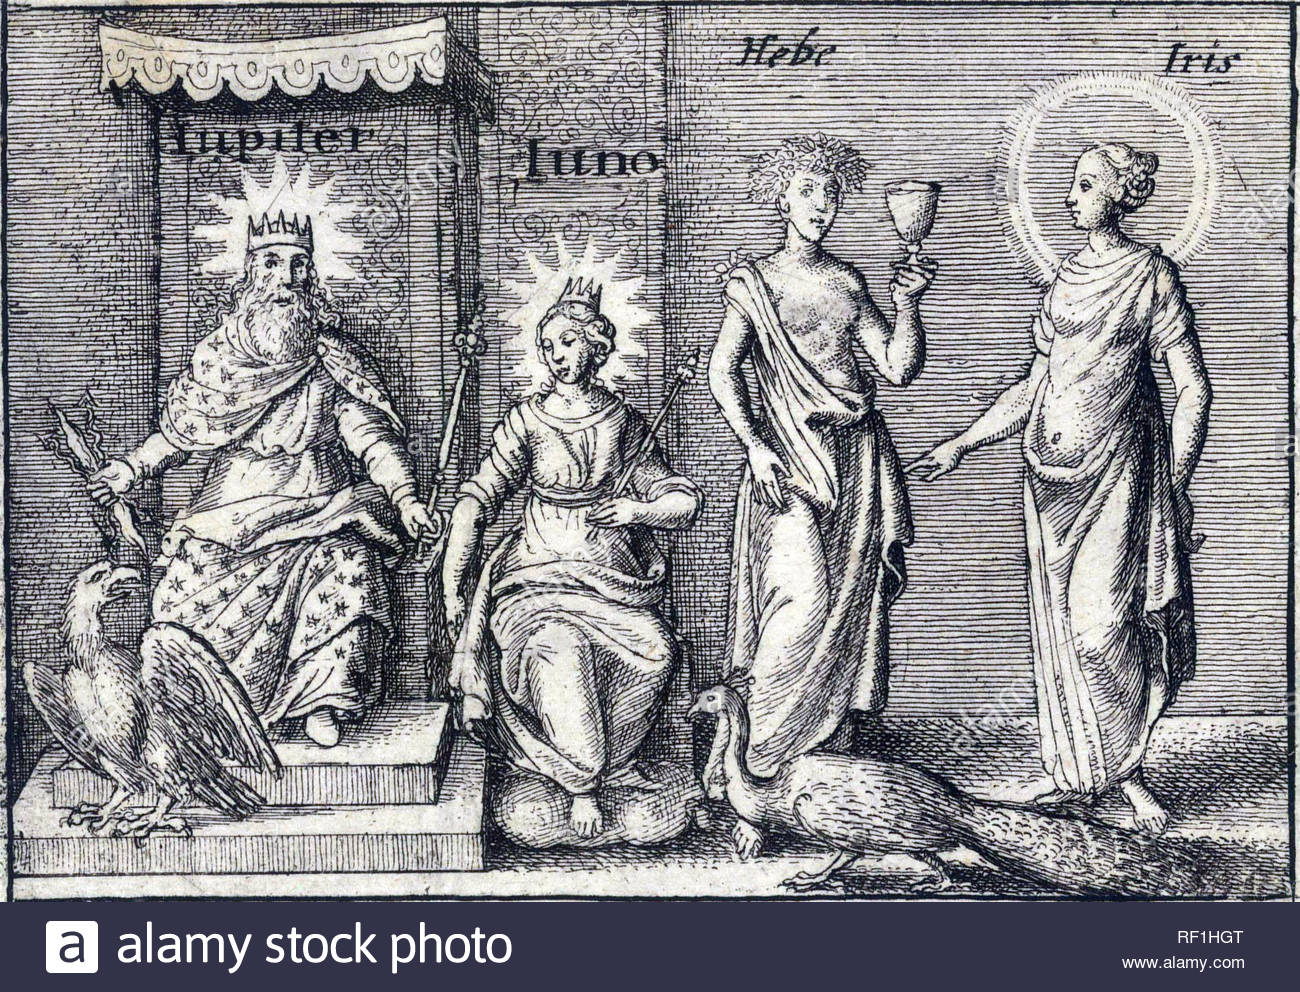 Dieux romains Jupiter et Junon et dieux grecs de Hebe et Iris, gravure par Wenceslaus Hollar aquafortiste bohème à partir de 1600 Banque D'Images